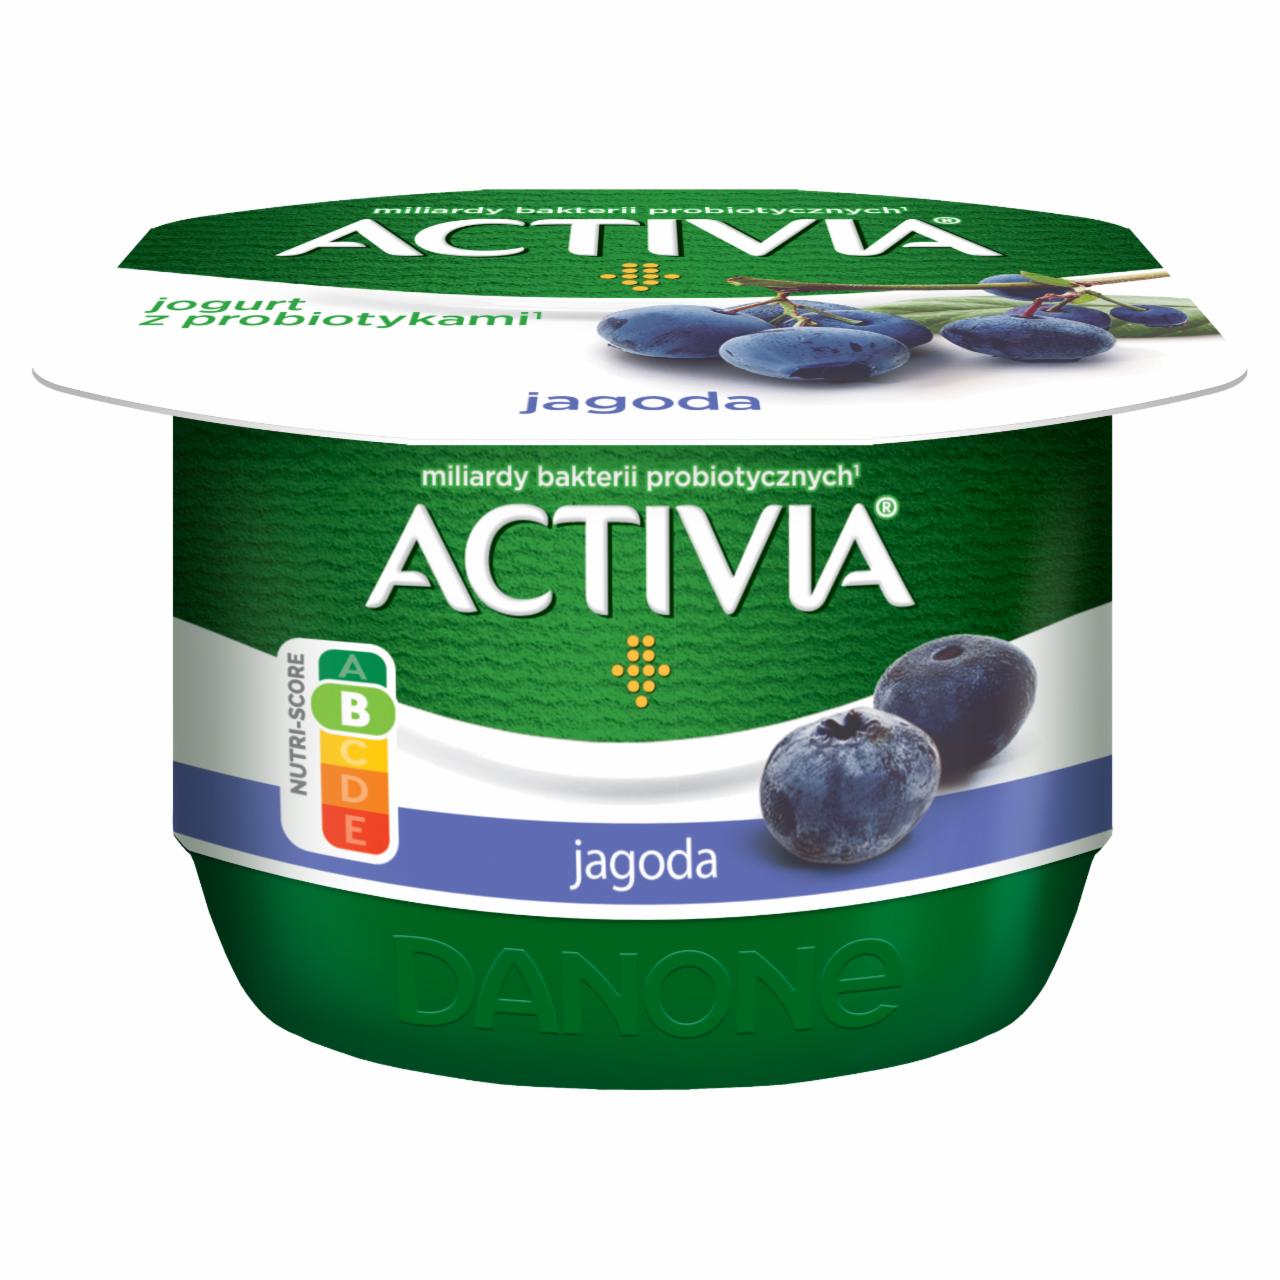 Zdjęcia - Activia Jogurt jagoda 120 g